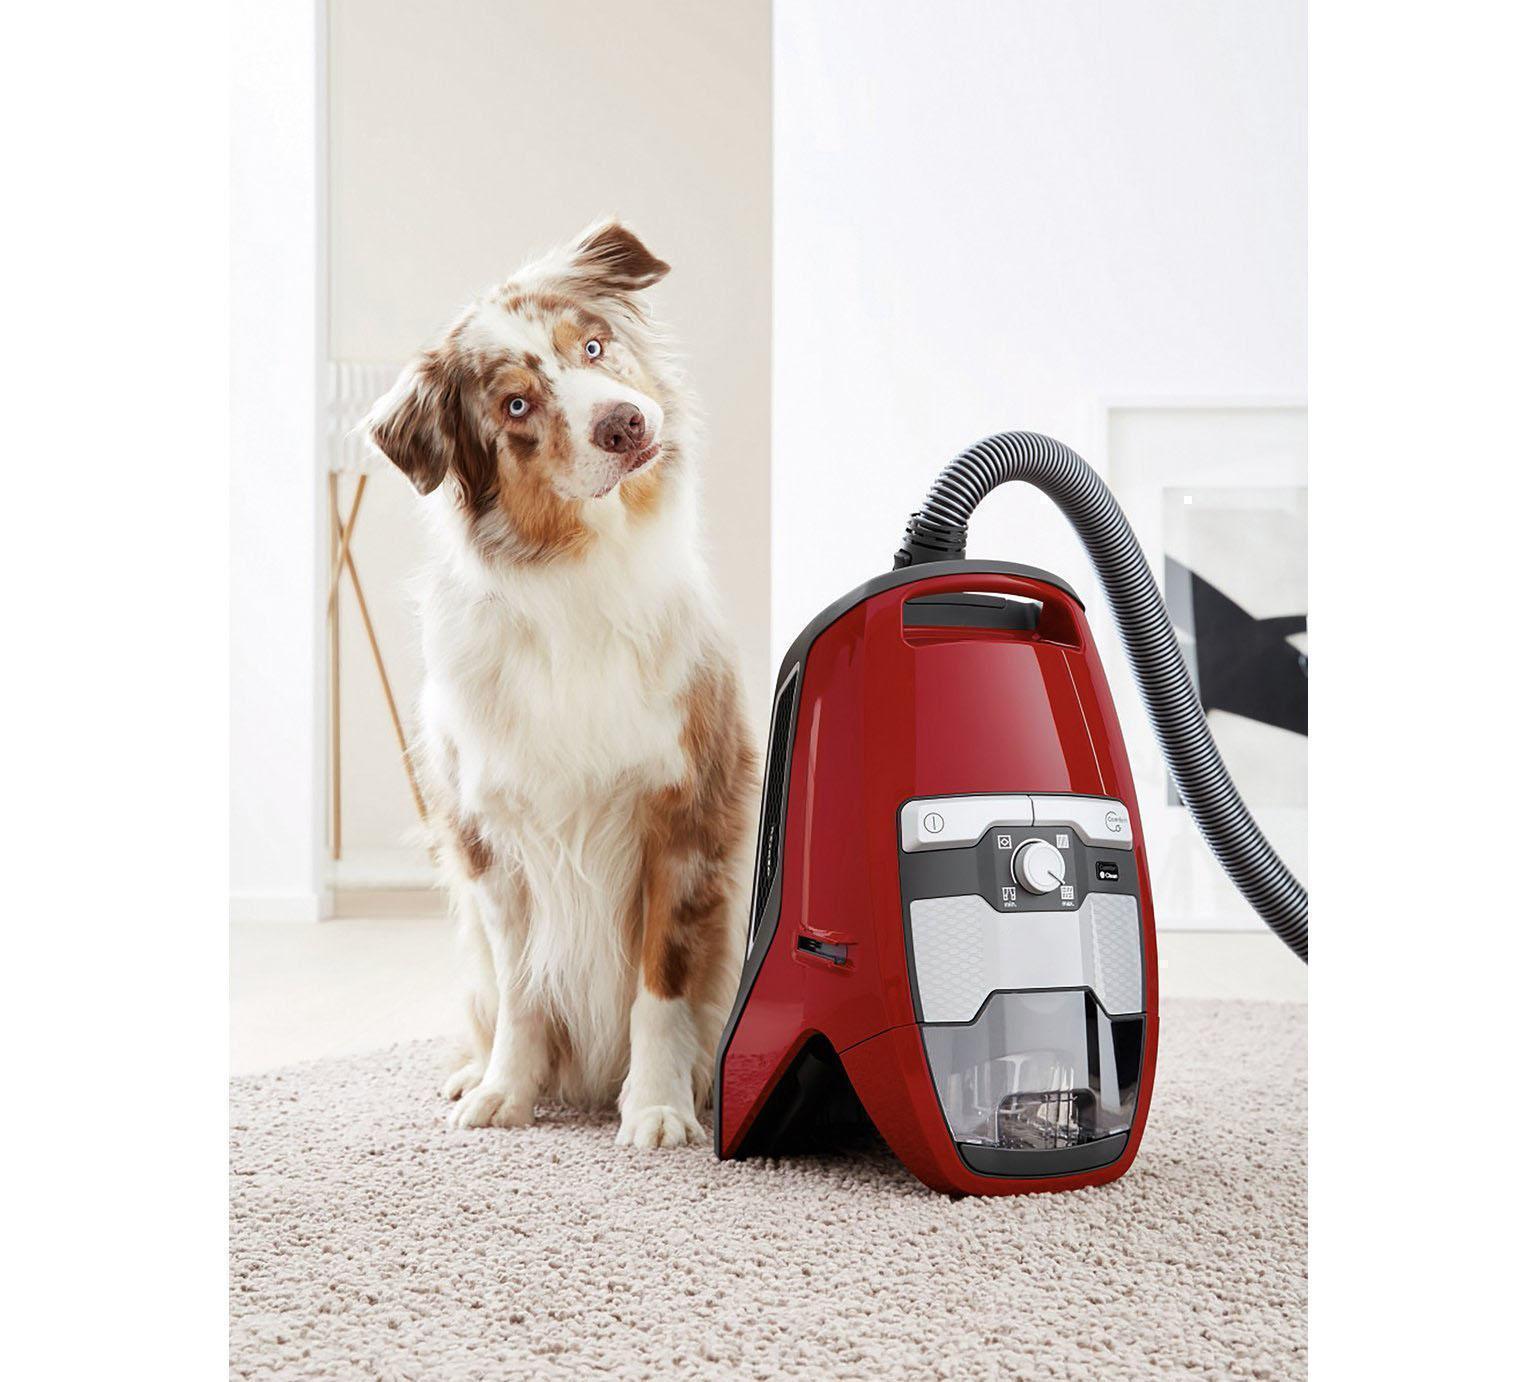 CX1 Blizzard Cat & Dog Vacuum Cleaner